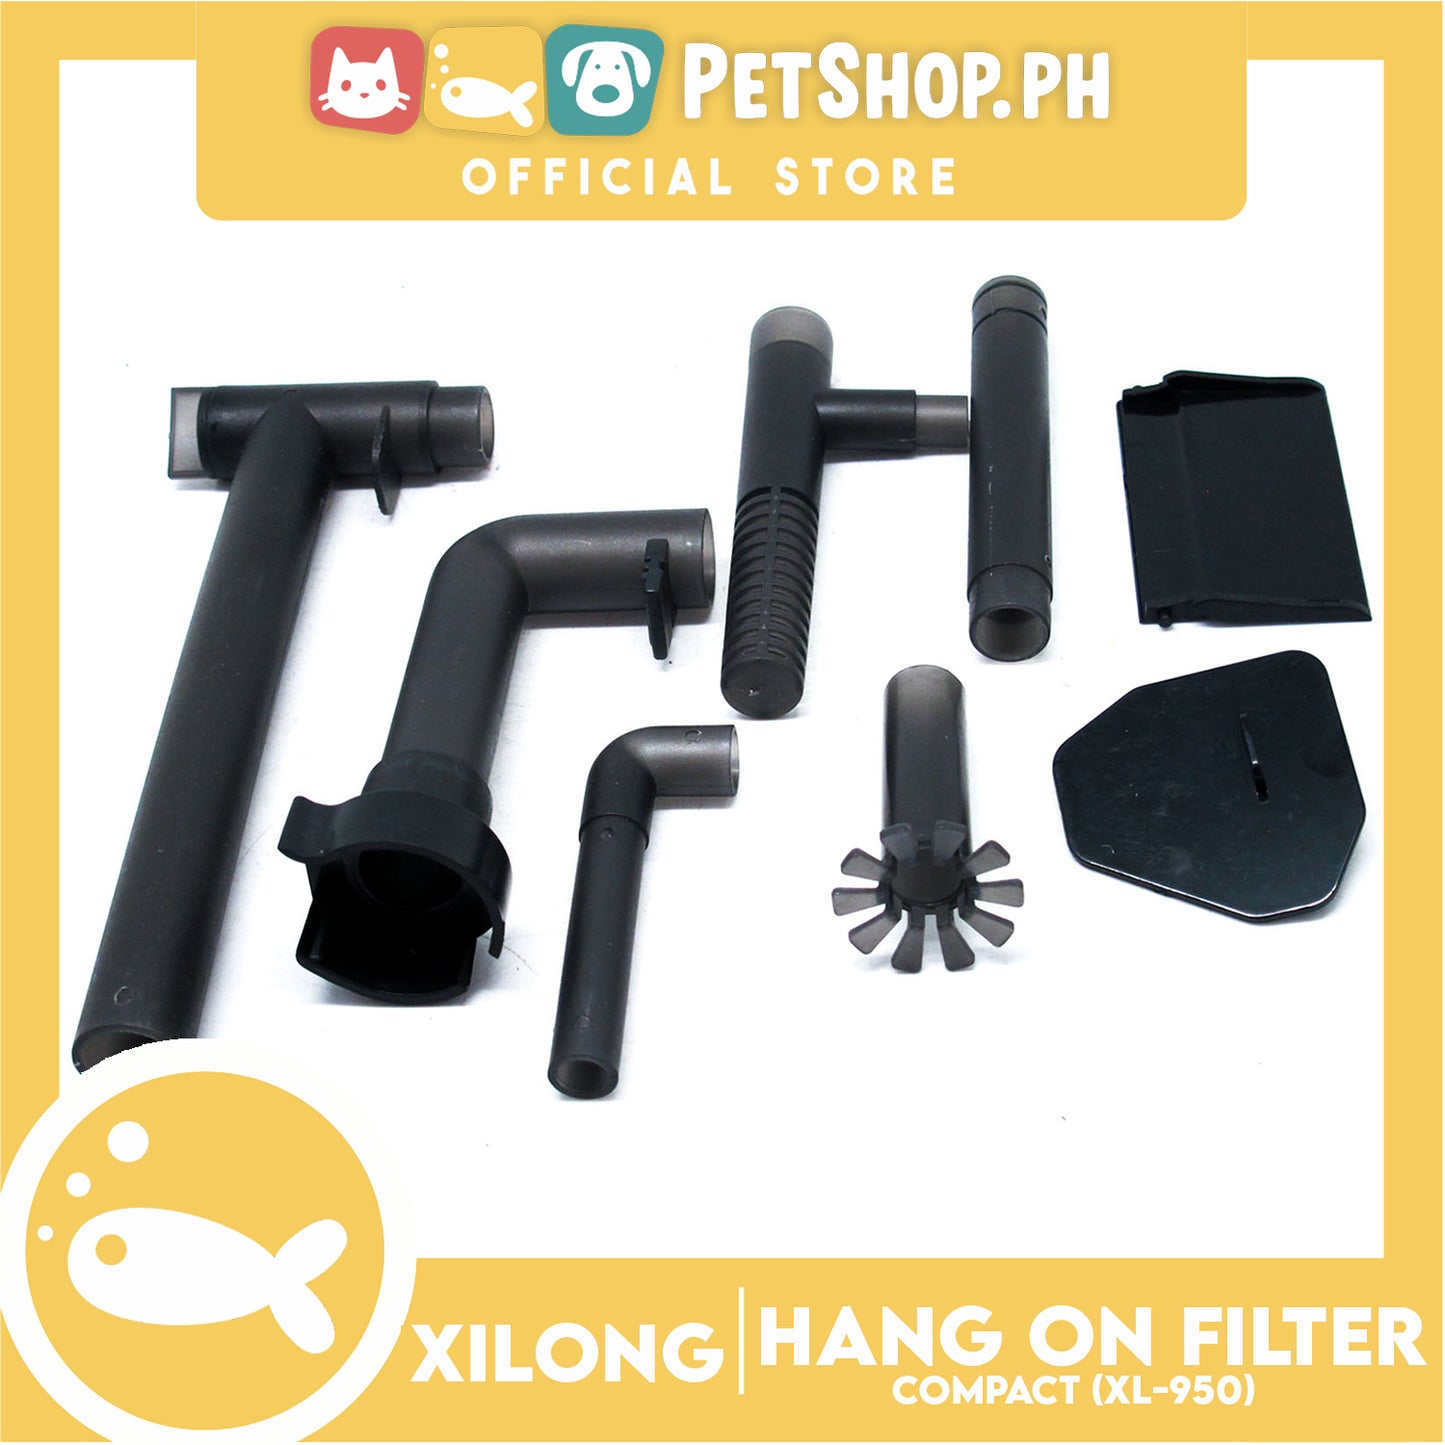 XL-960 Hangon Filter 8w